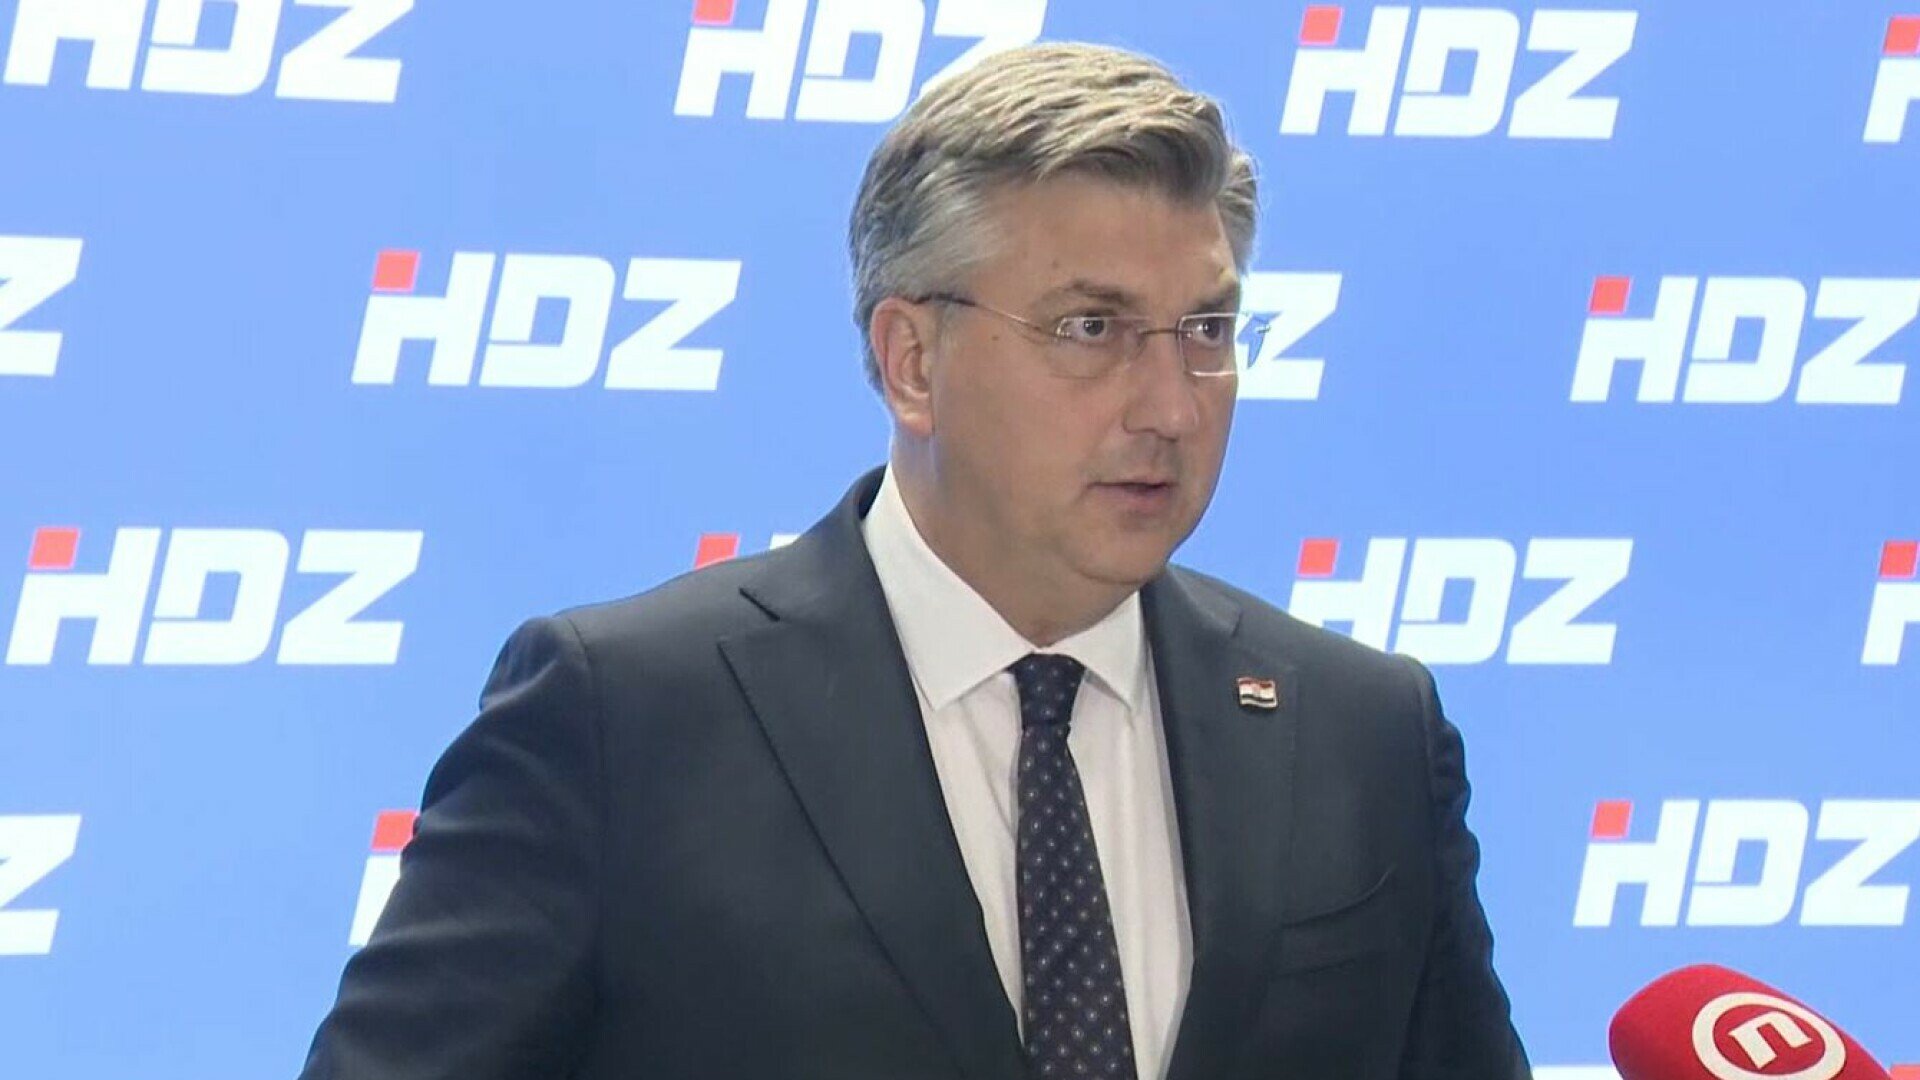 Sastanak vrha HDZ-a, očekuje se izjava premijera Plenkovića